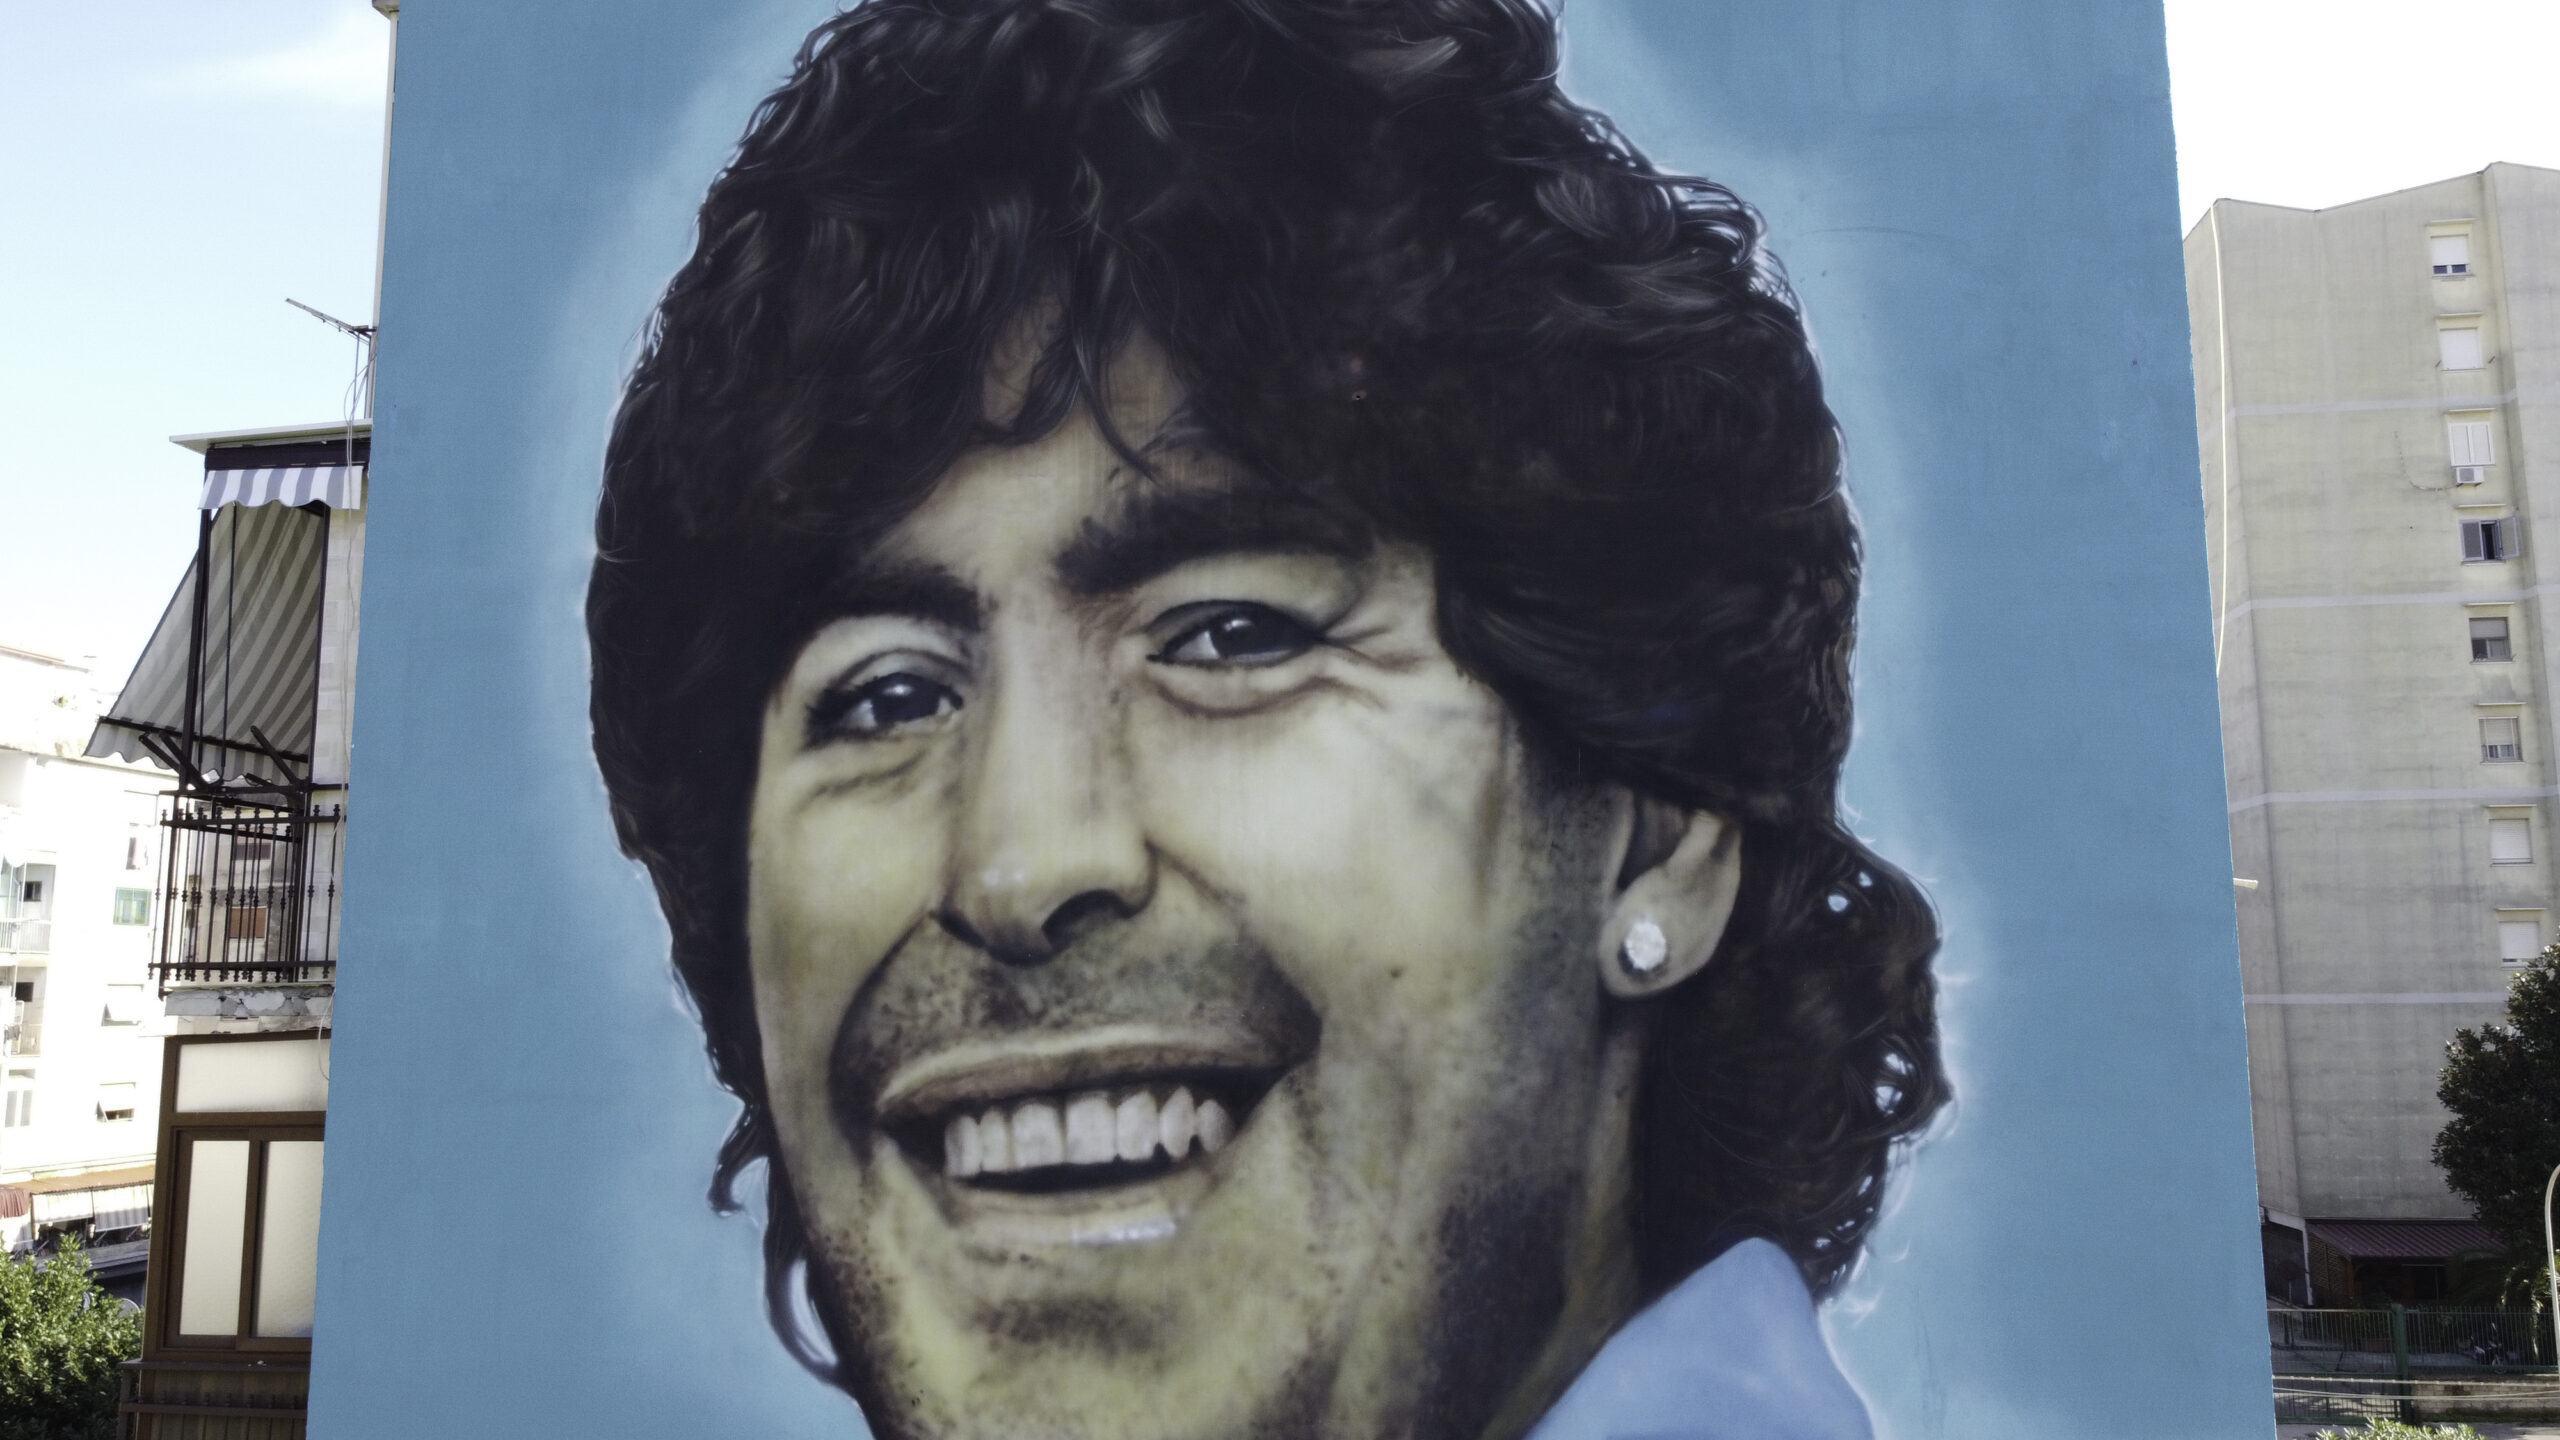 Moştenitorii lui Maradona au câştigat, în instantă, dreptul de a folosi numele fostului fotbalist